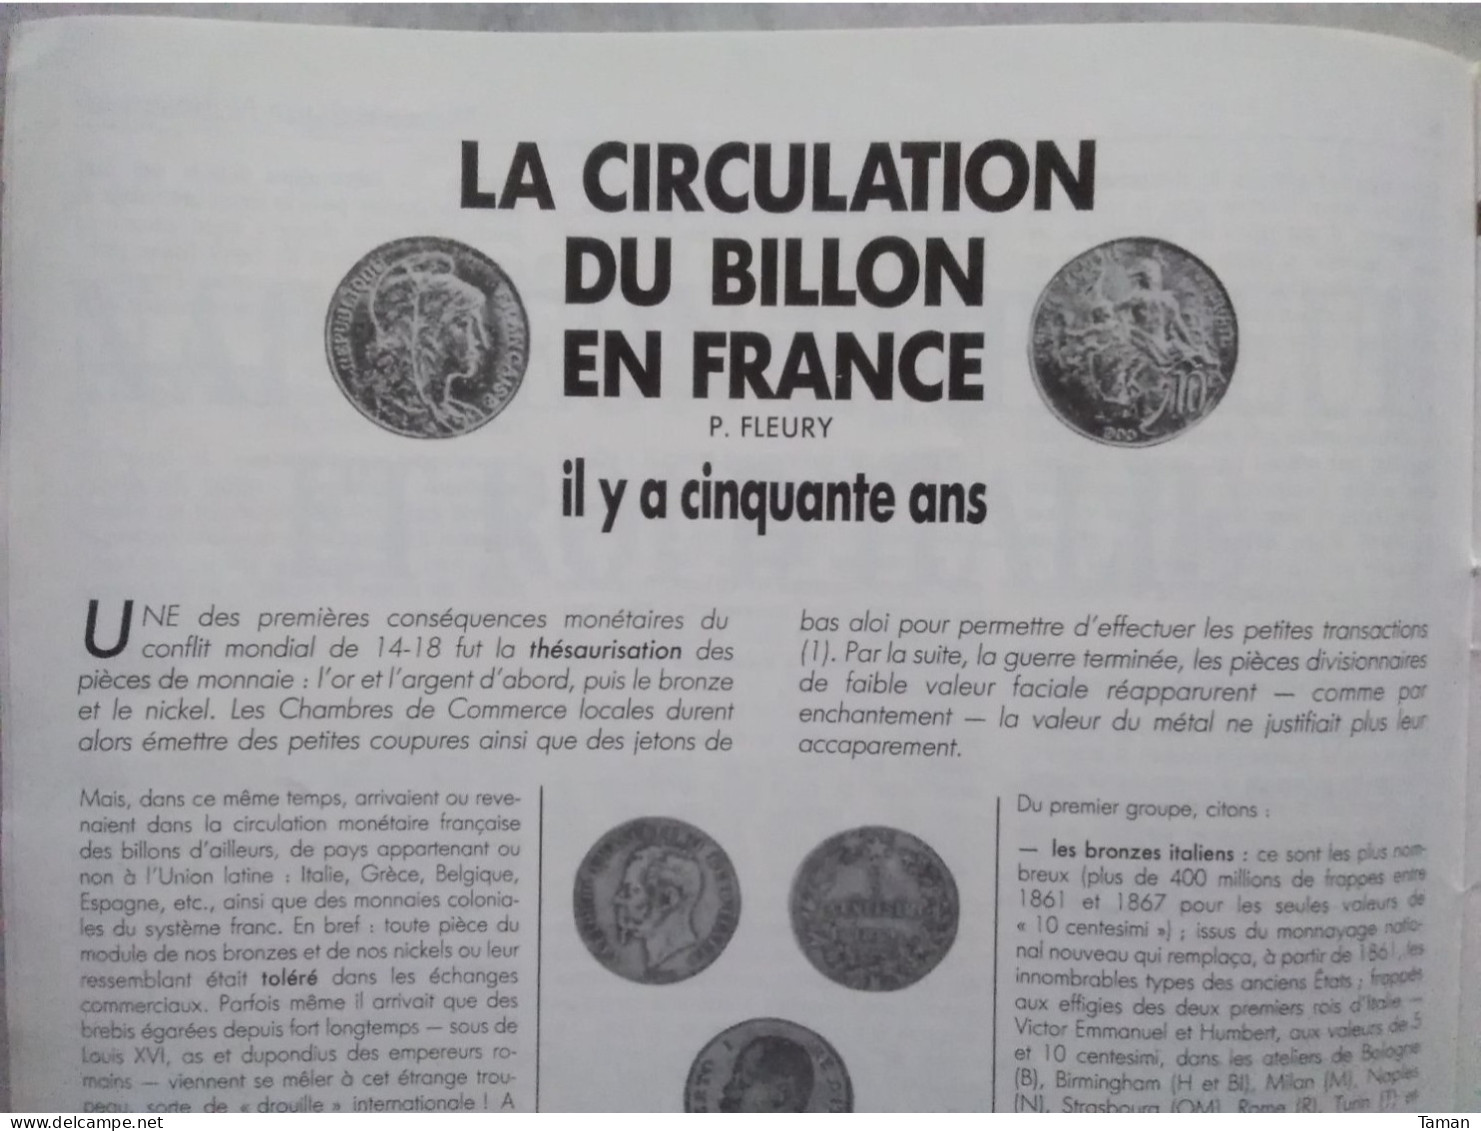 Numismatique & Change - Napoléonides Italie - Circulation Du Billon En France - Grèce Antique - Royales - Belgique - French